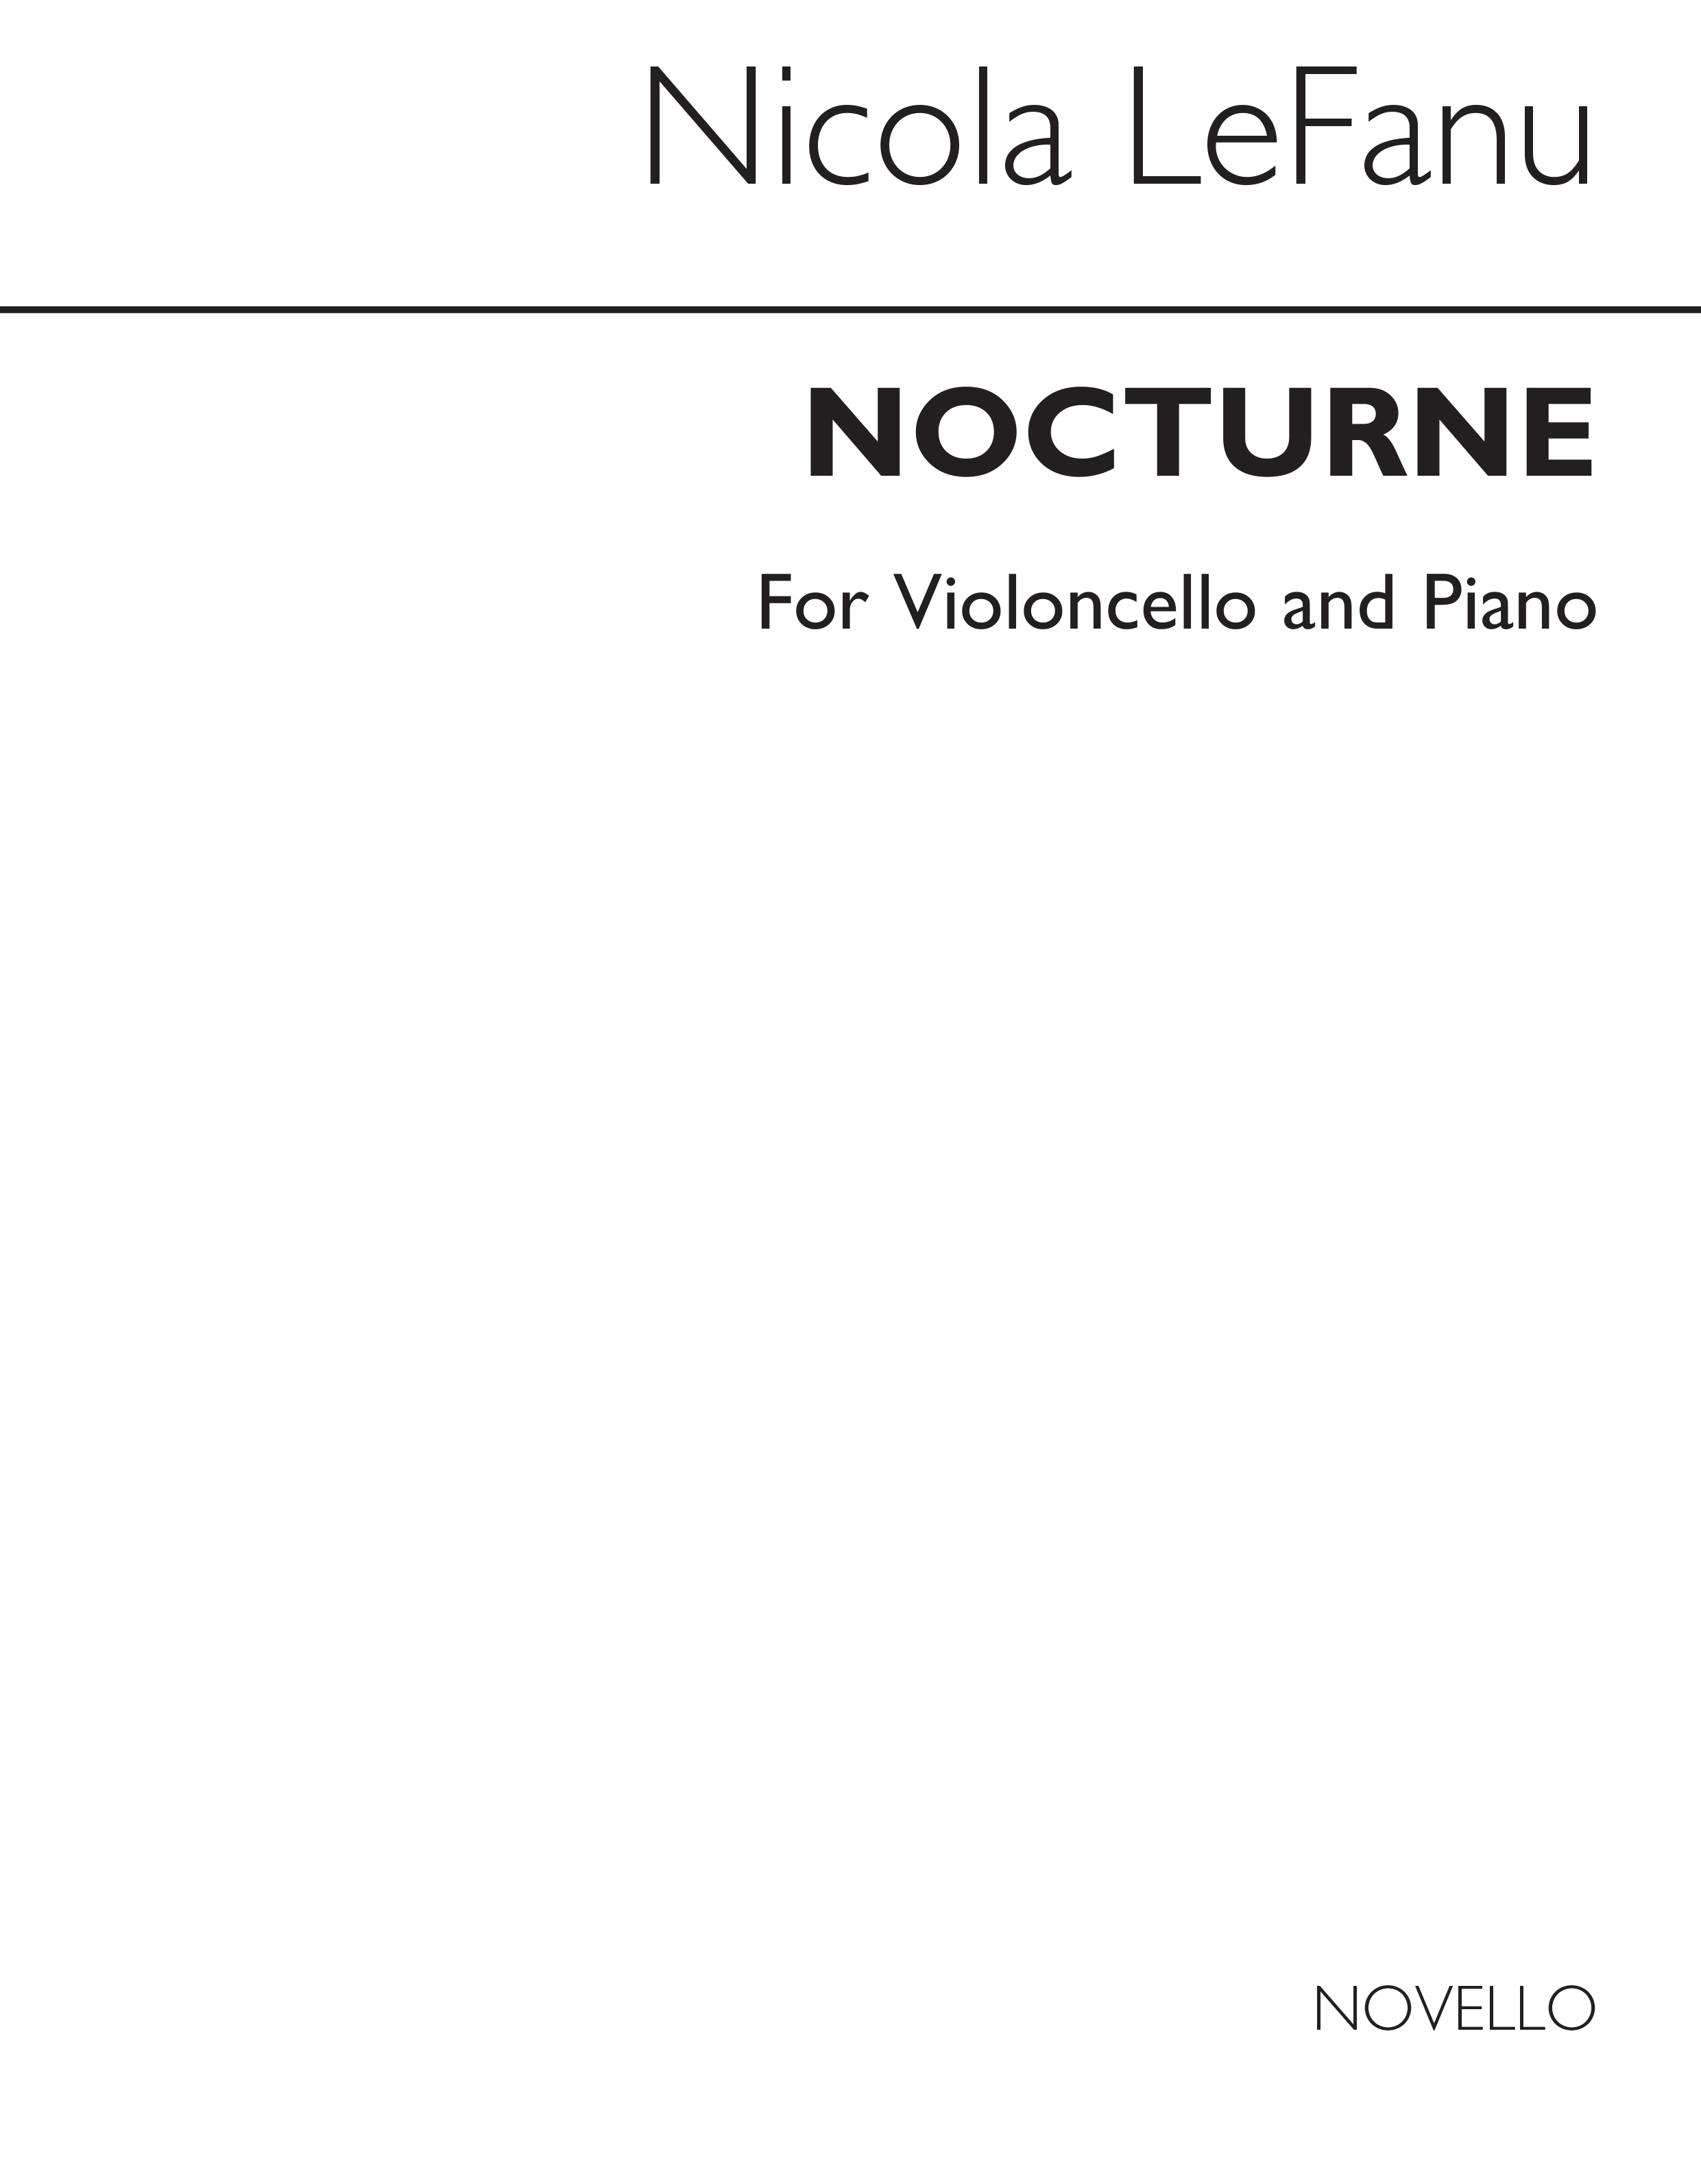 Nicola Lefanu: Nocturne